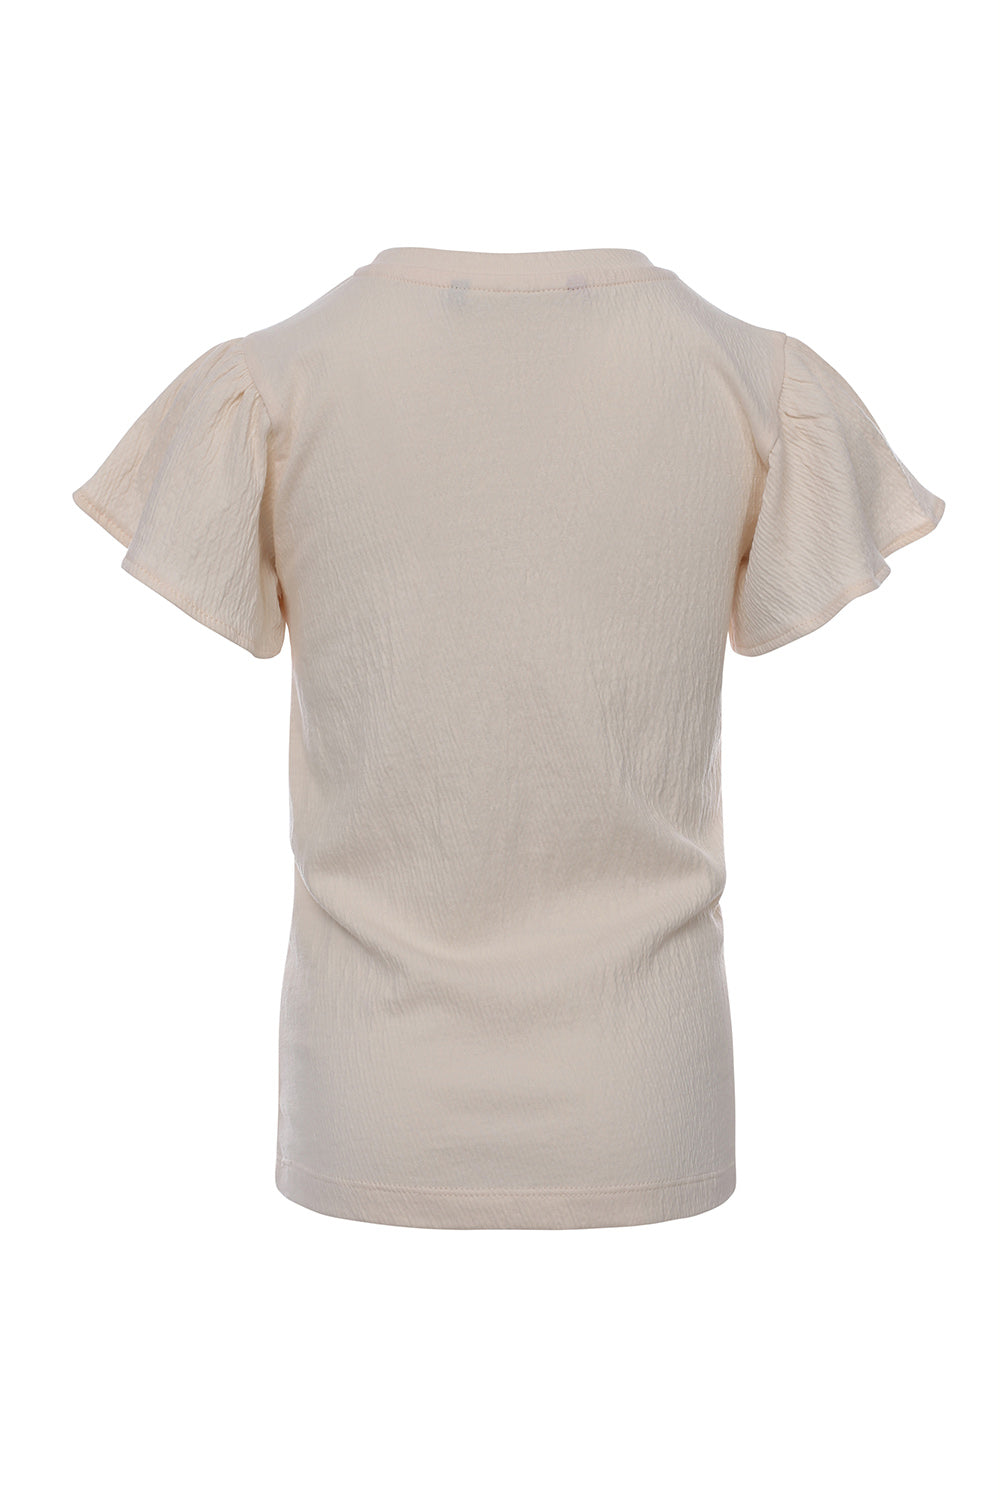 Meisjes Crinkle T-Shirt van LOOXS Little in de kleur Warm white in maat 128.